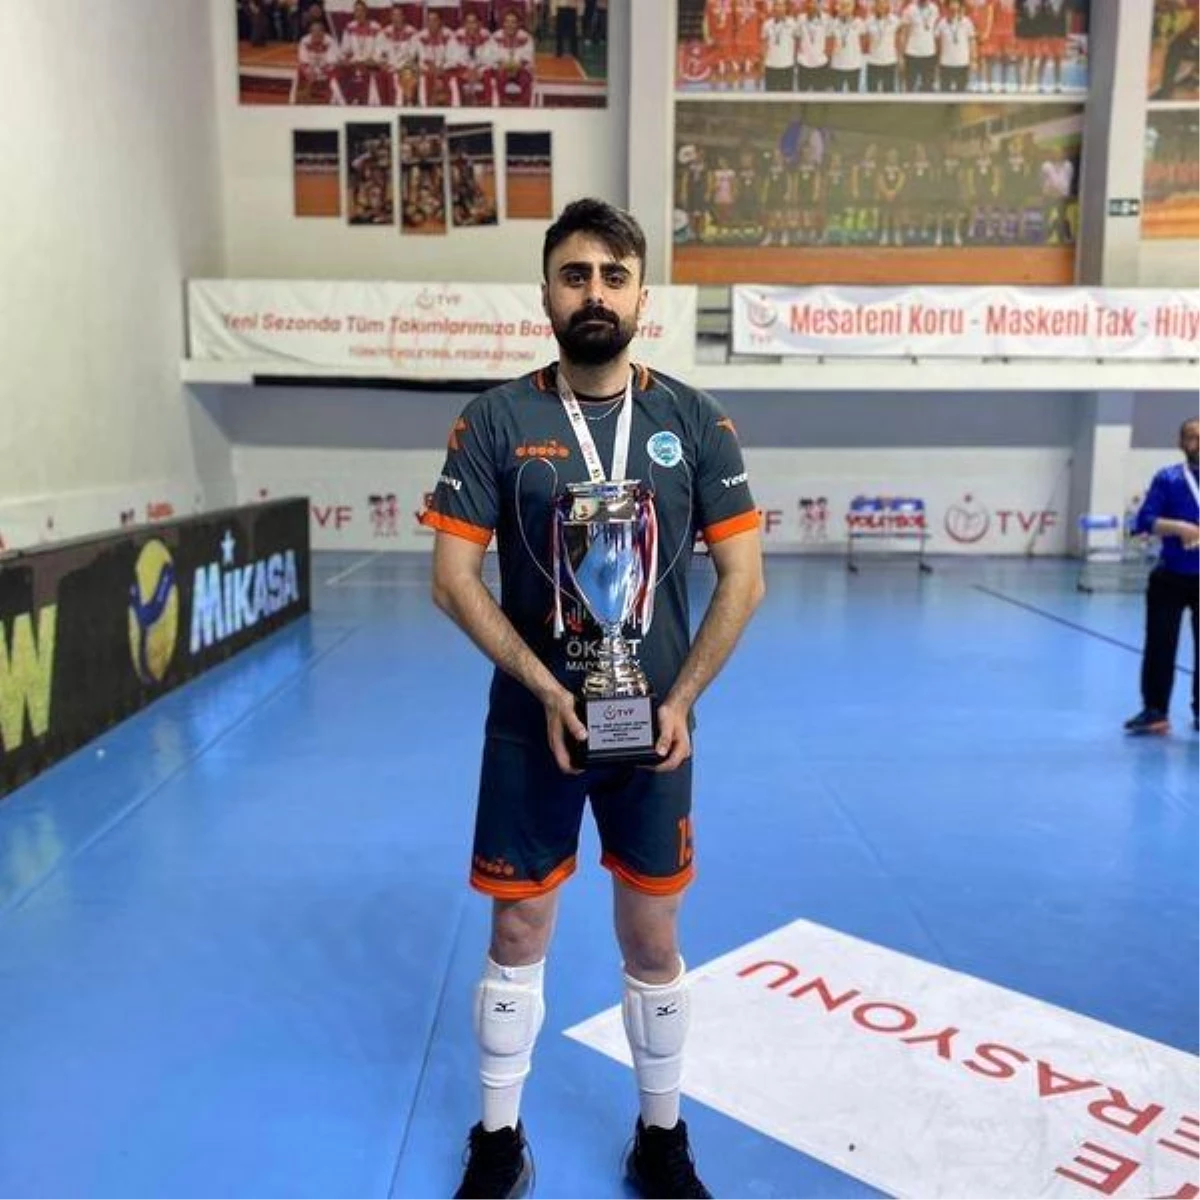 Develi Belediyespor Voleybol Takımı oyuncusu Yusuf Afşar: "Şampiyonluk hayırlı olsun"